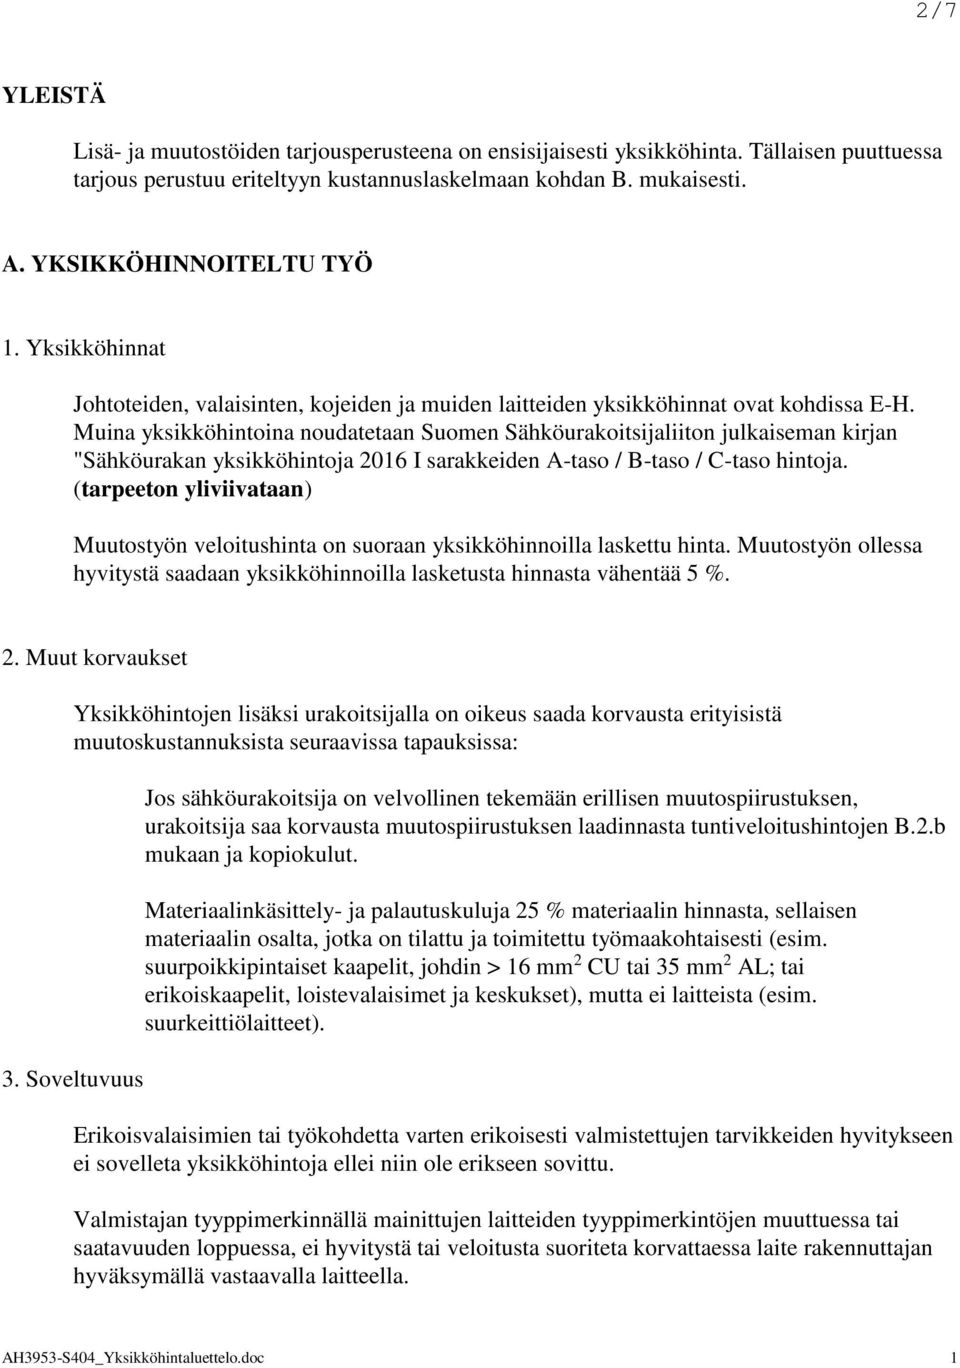 Muina yksikköhintoina noudatetaan Suomen Sähköurakoitsijaliiton julkaiseman kirjan "Sähköurakan yksikköhintoja 2016 I sarakkeiden A-taso / B-taso / C-taso hintoja.